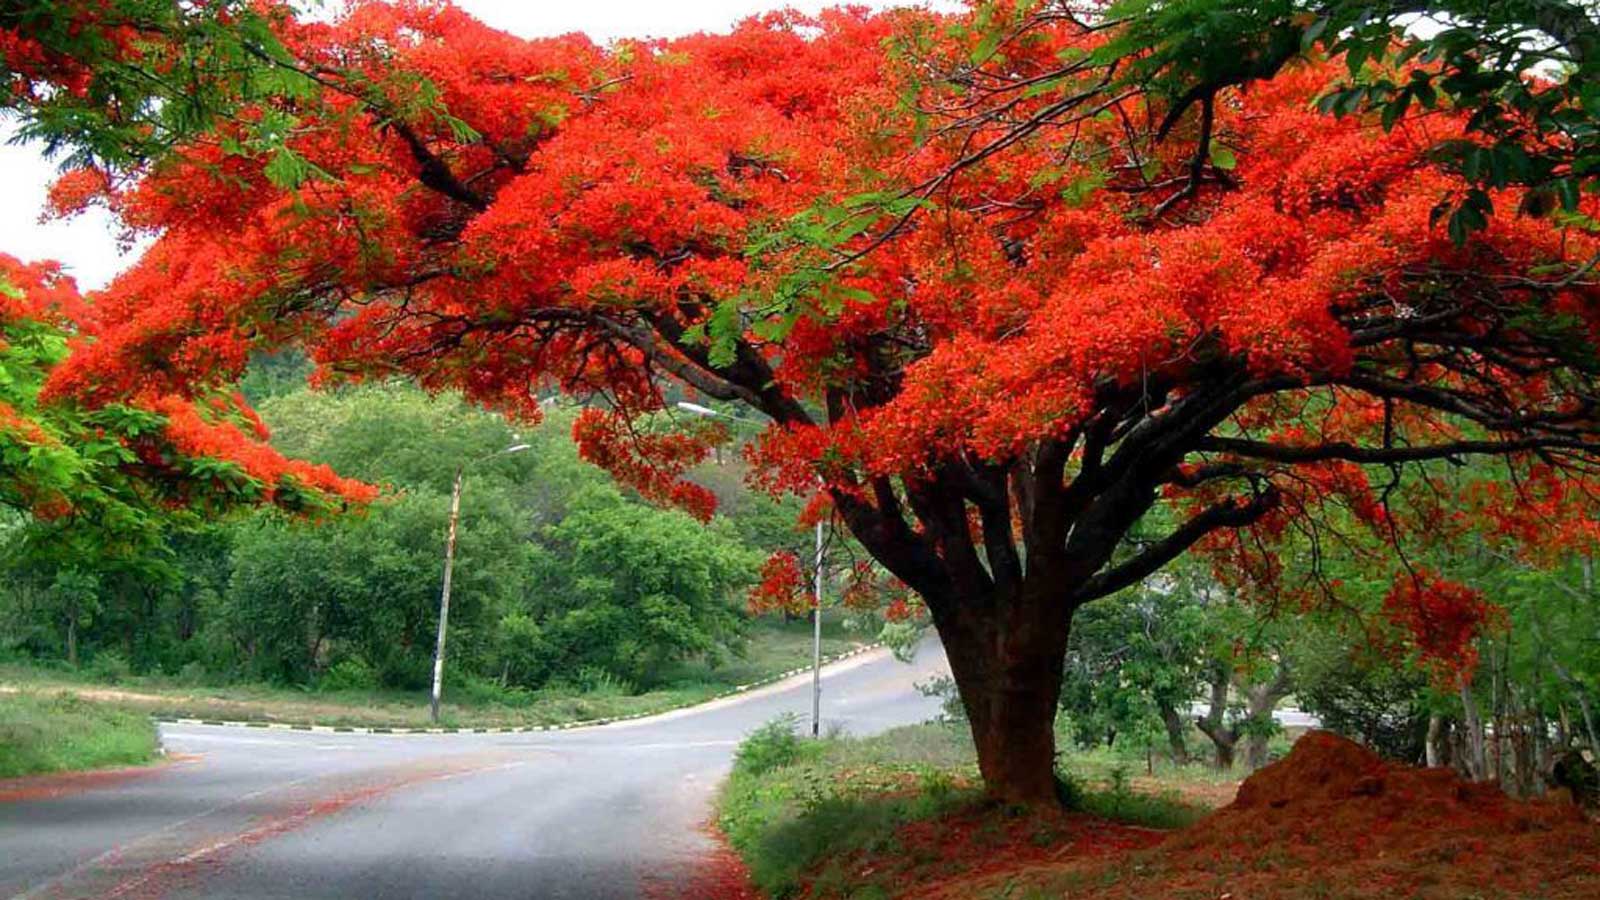 Flamboyán, el rojizo árbol de gran belleza - México Desconocido